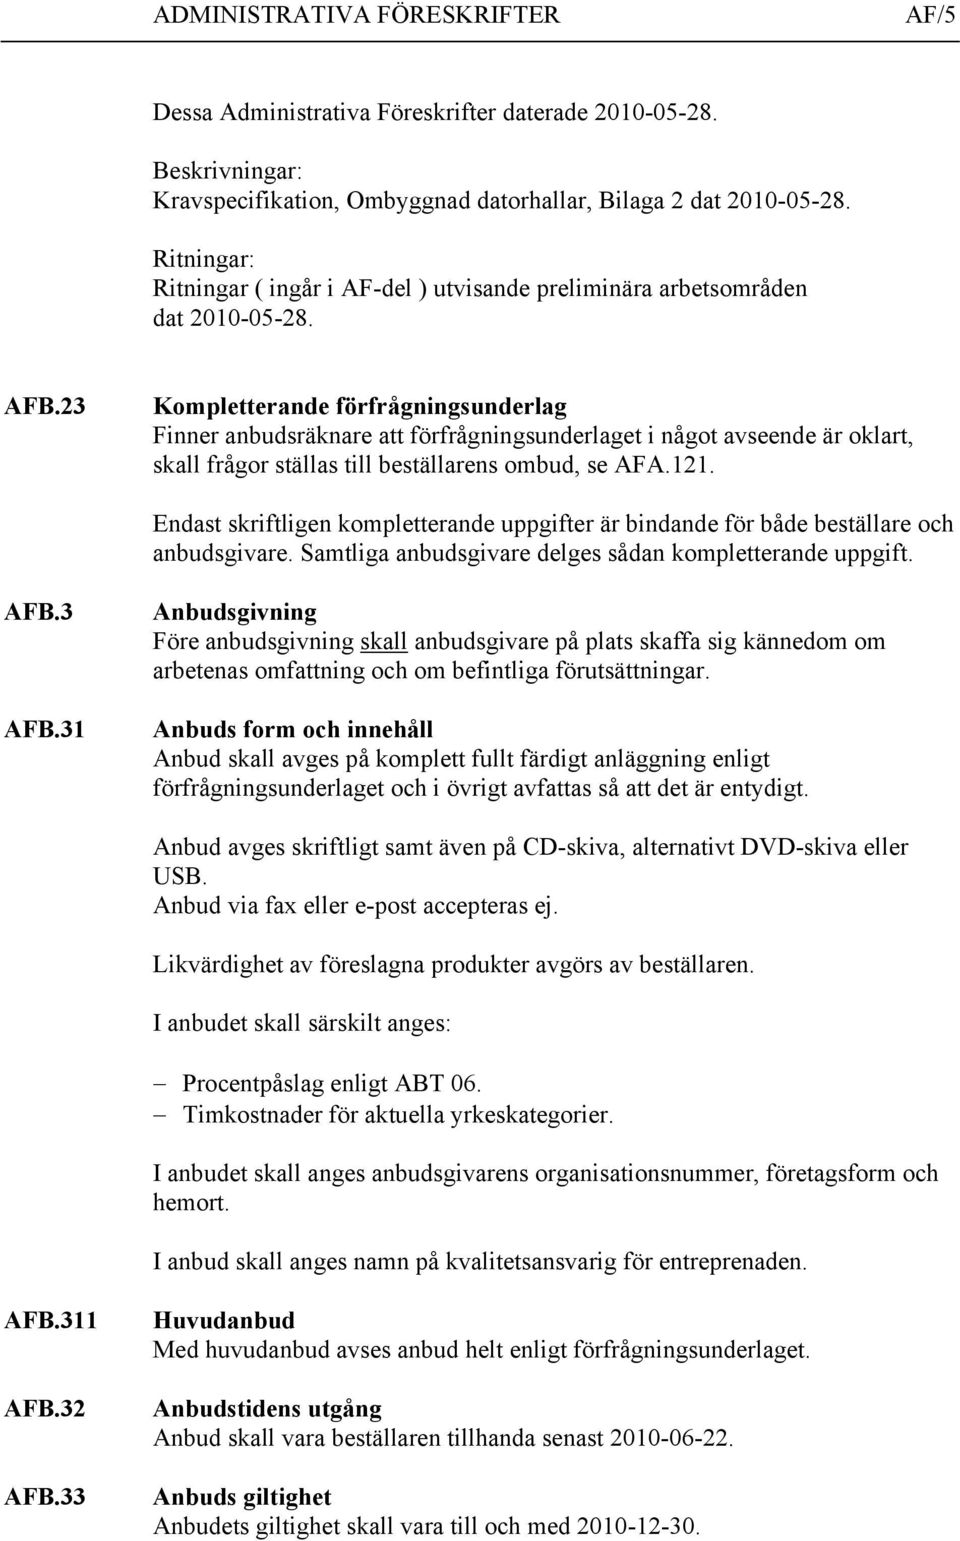 23 Kompletterande förfrågningsunderlag Finner anbudsräknare att förfrågningsunderlaget i något avseende är oklart, skall frågor ställas till beställarens ombud, se AFA.121.